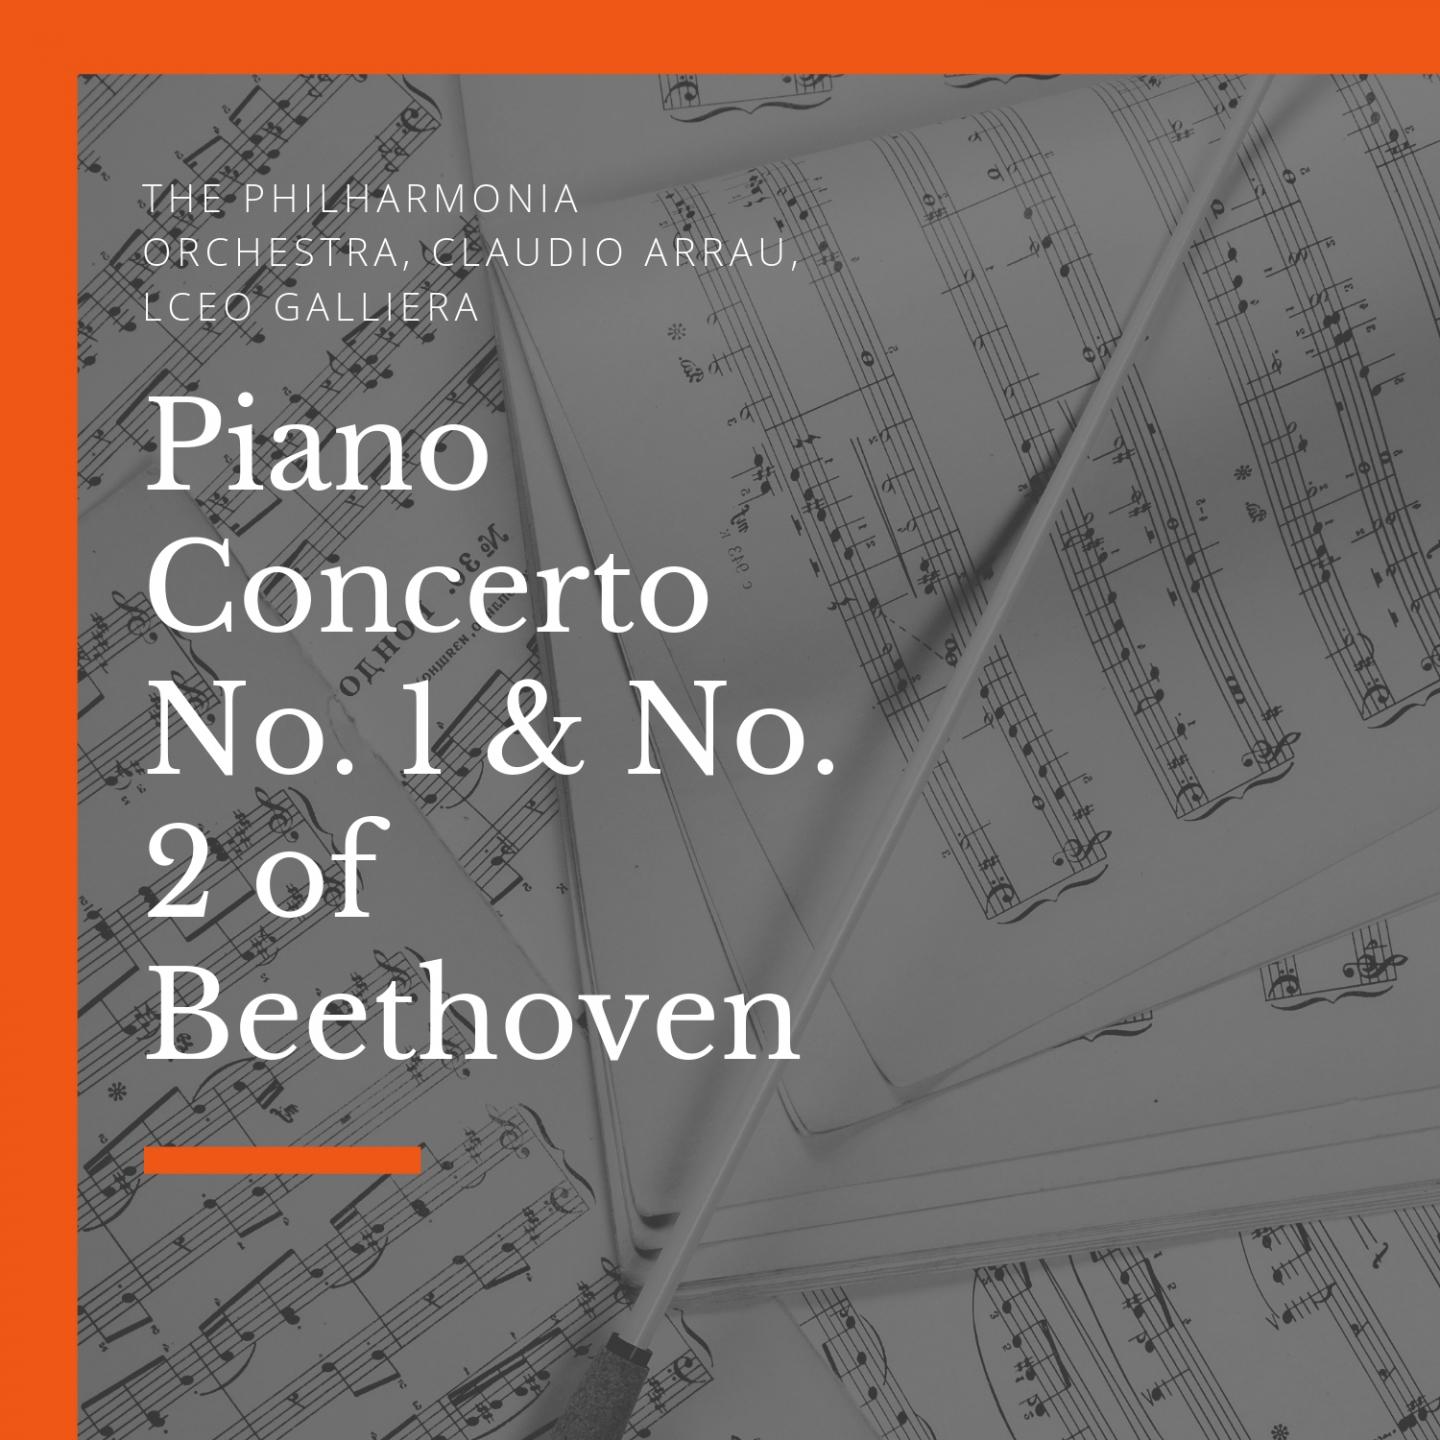 Piano Concerto No. 2, in B-Flat Major, Op. 19: III. Rondo Molto allegro